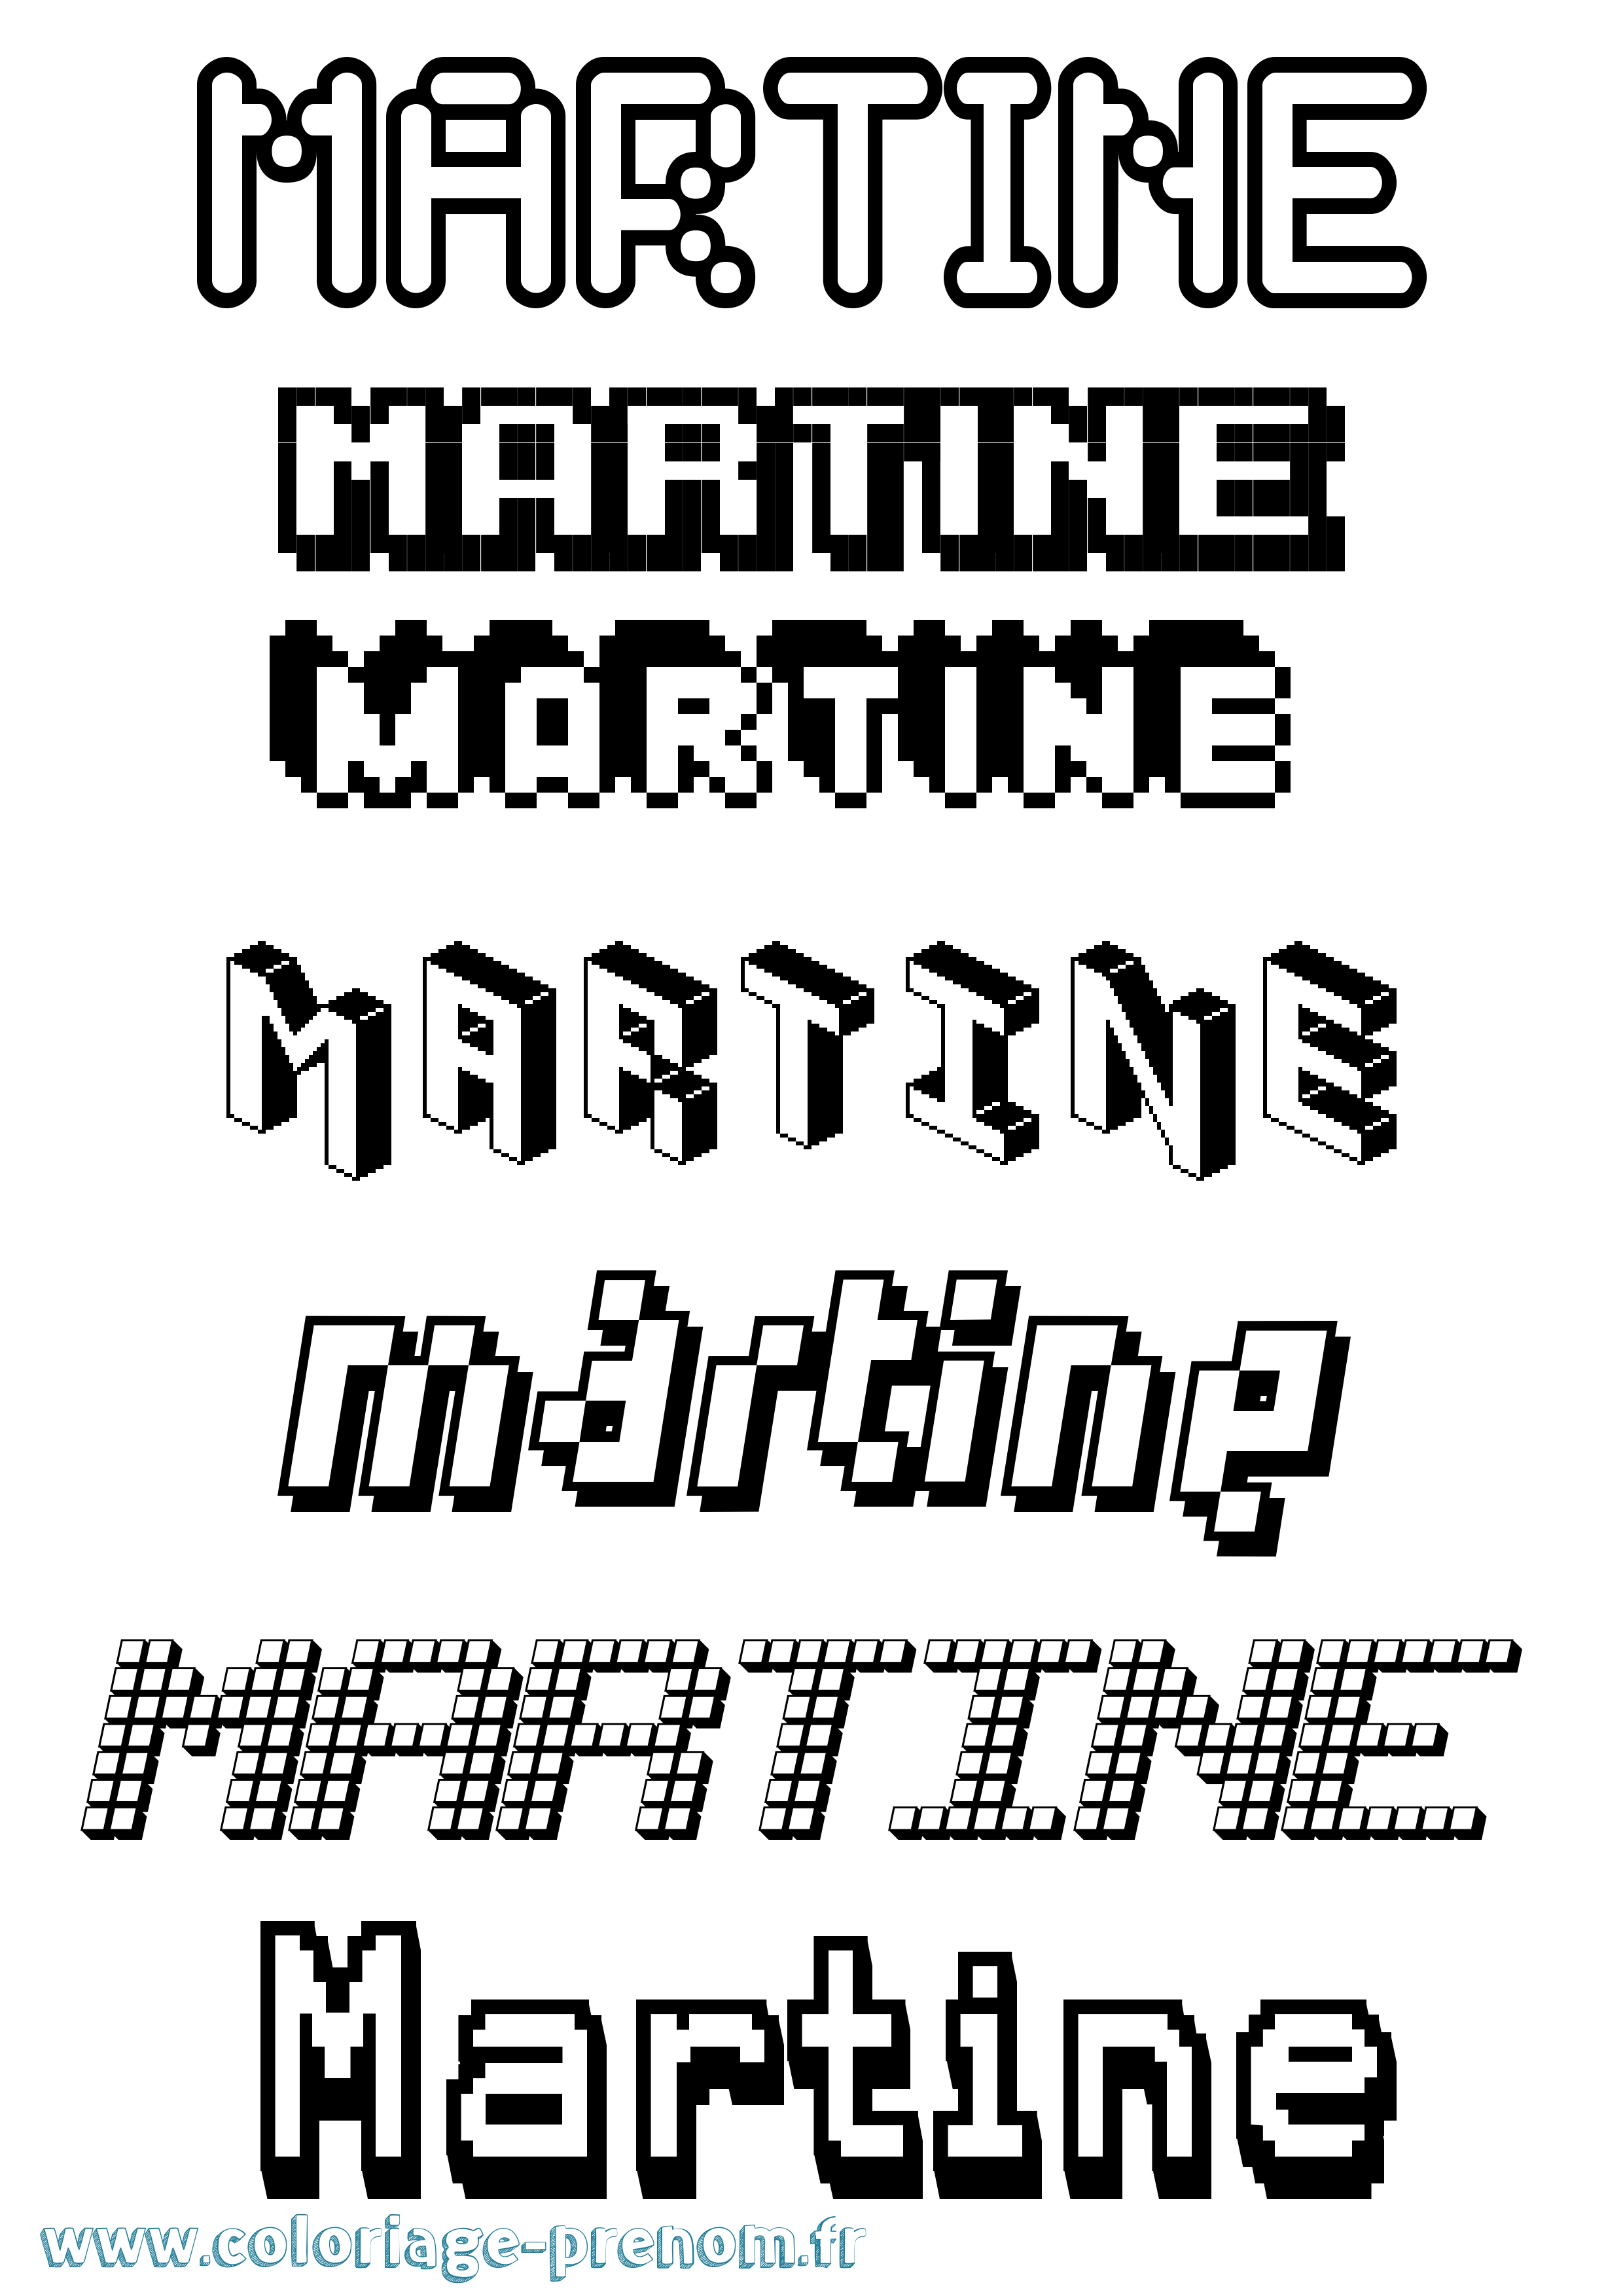 Coloriage prénom Martine